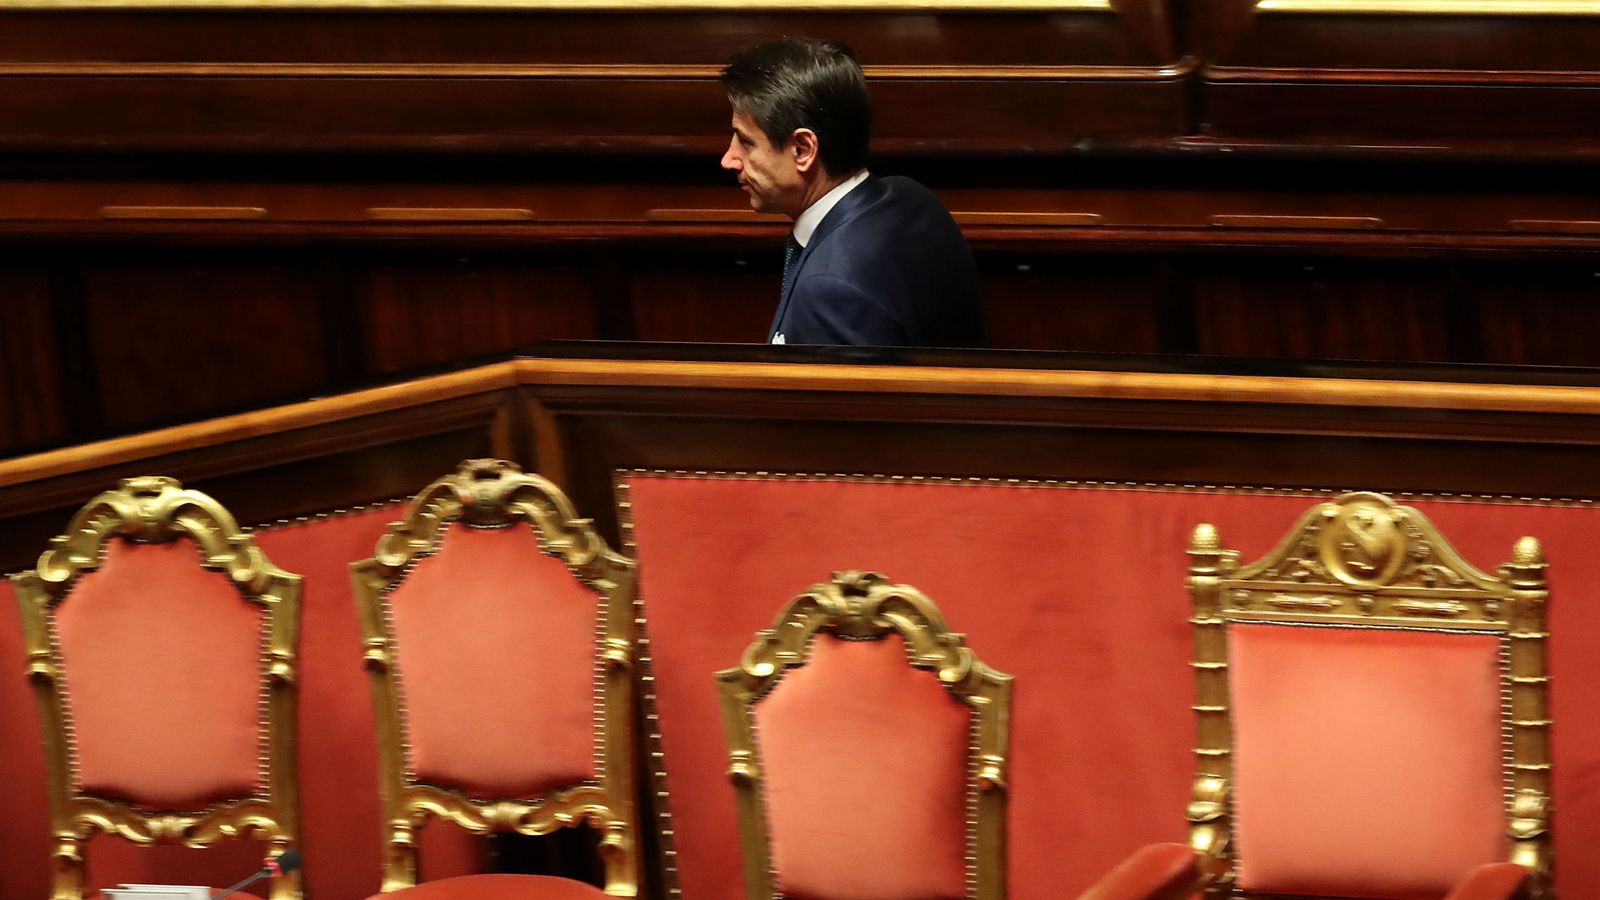 Foto: El presidente italiano Giuseppe Conte sale del Senado tras un debate, en Roma, el 19 de diciembre de 2018. (Reuters)